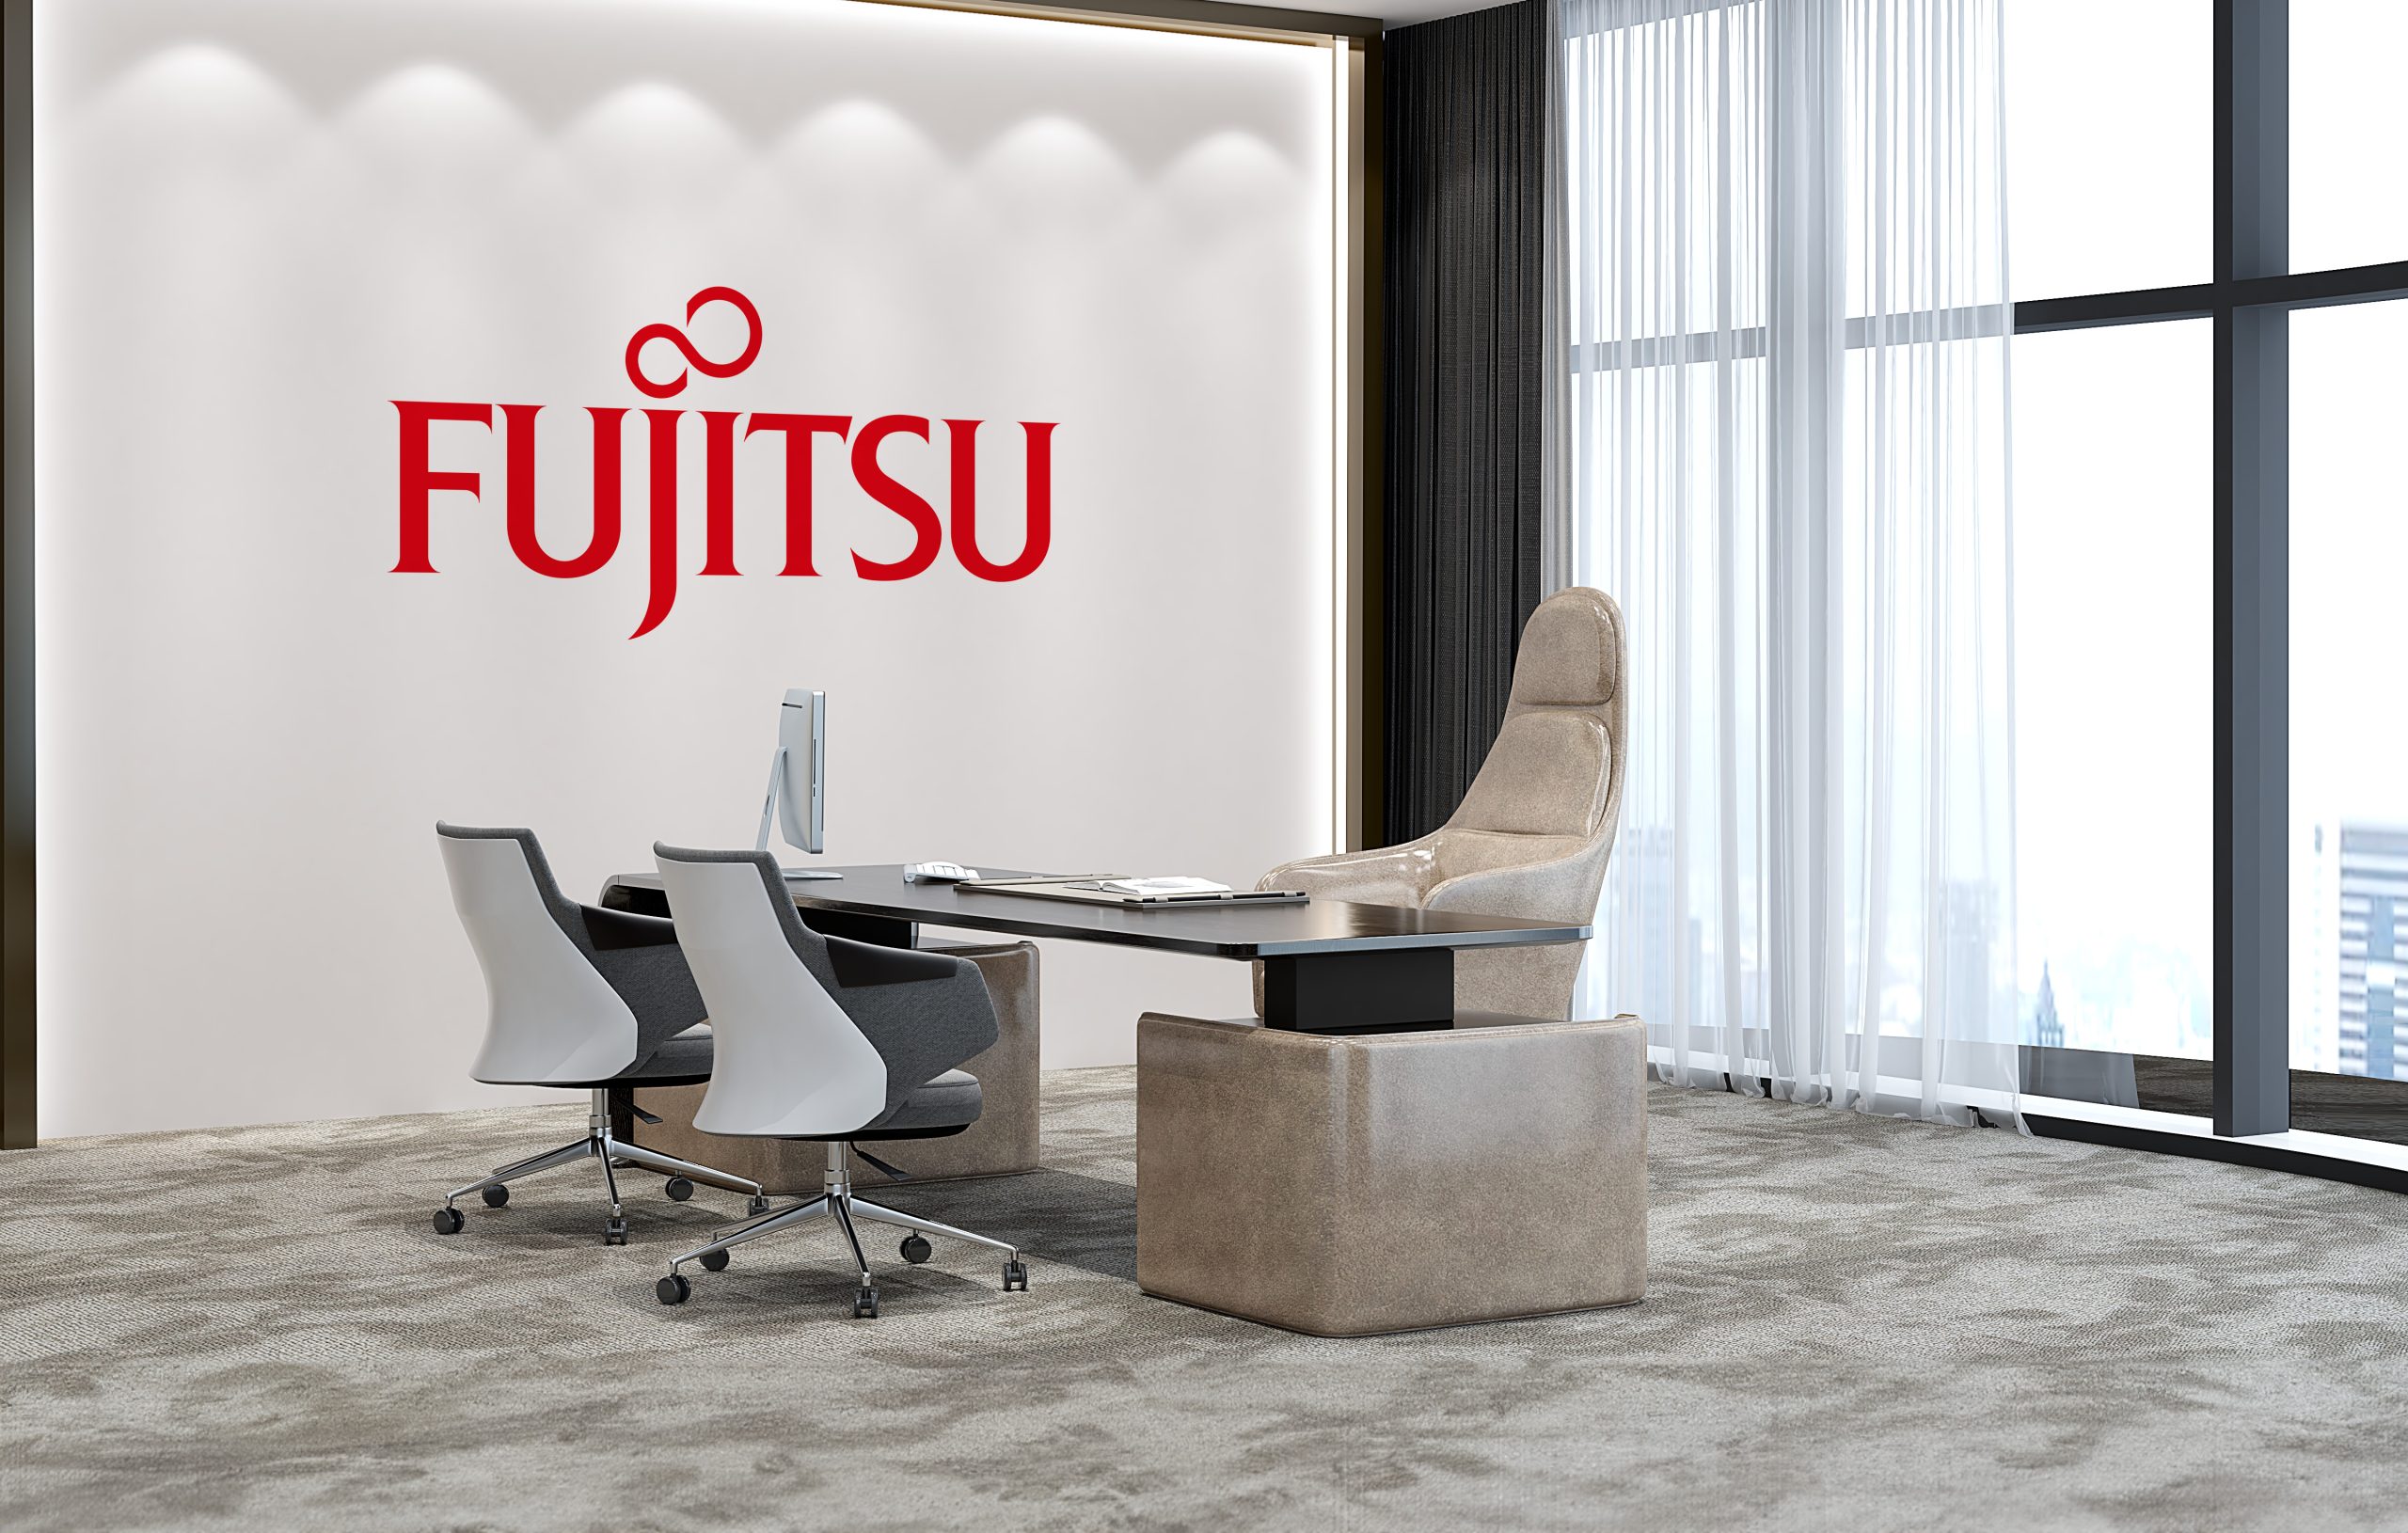 Modernes Chefbüro in eines Großstadt mit Fujitsu Logo an der Wand